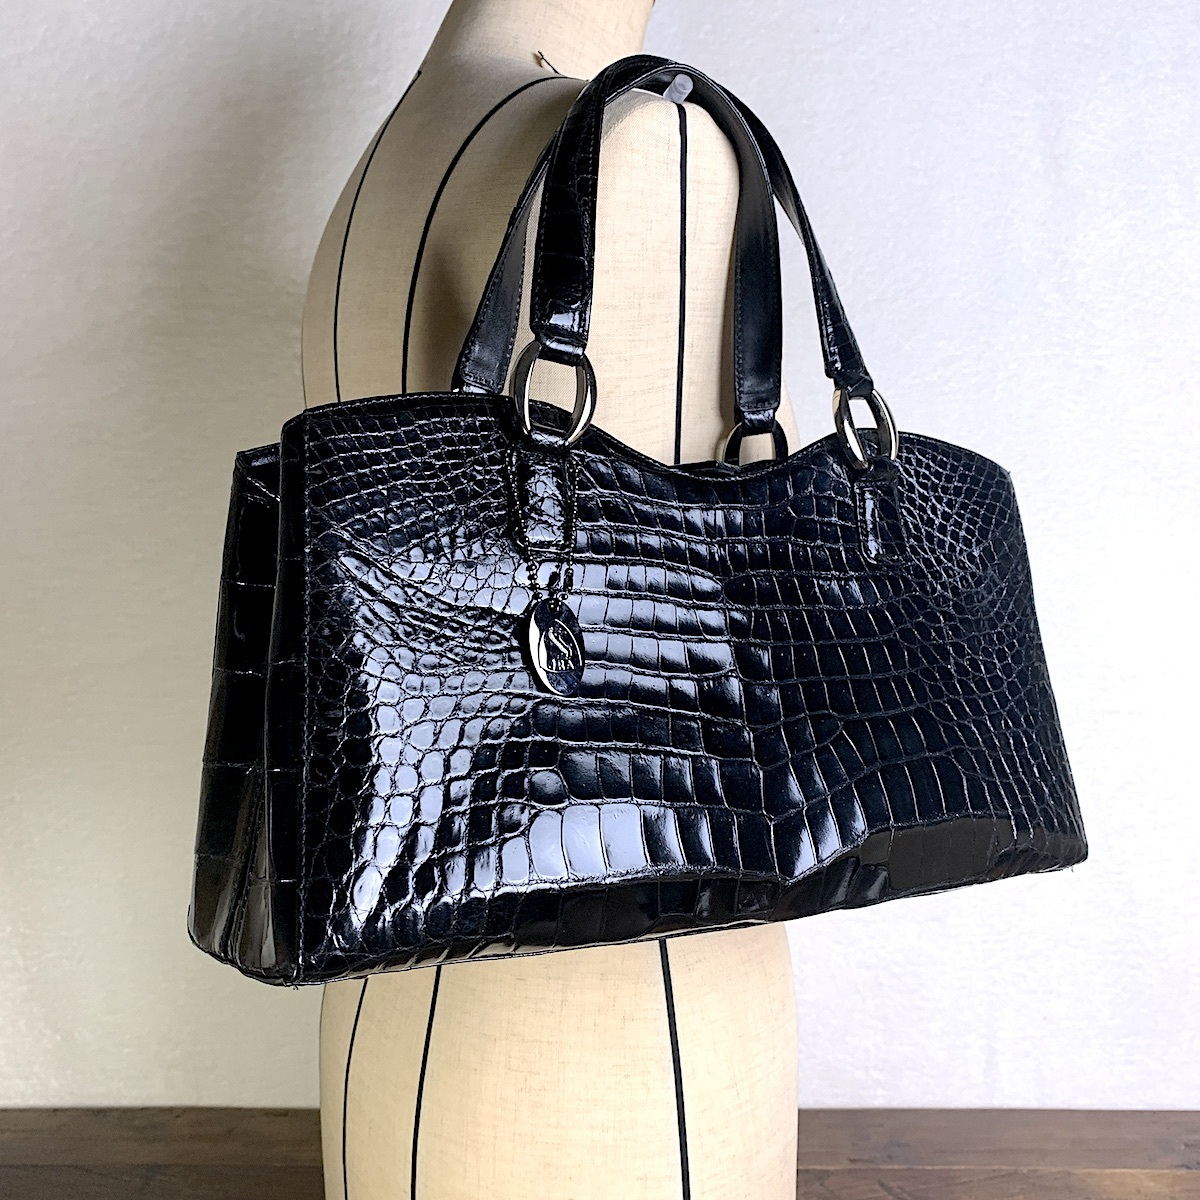 【美品】ヴィンテージ クロコダイル上質な本革バッグ 黒 百貨店 ハンドバッグ オンライン買い物